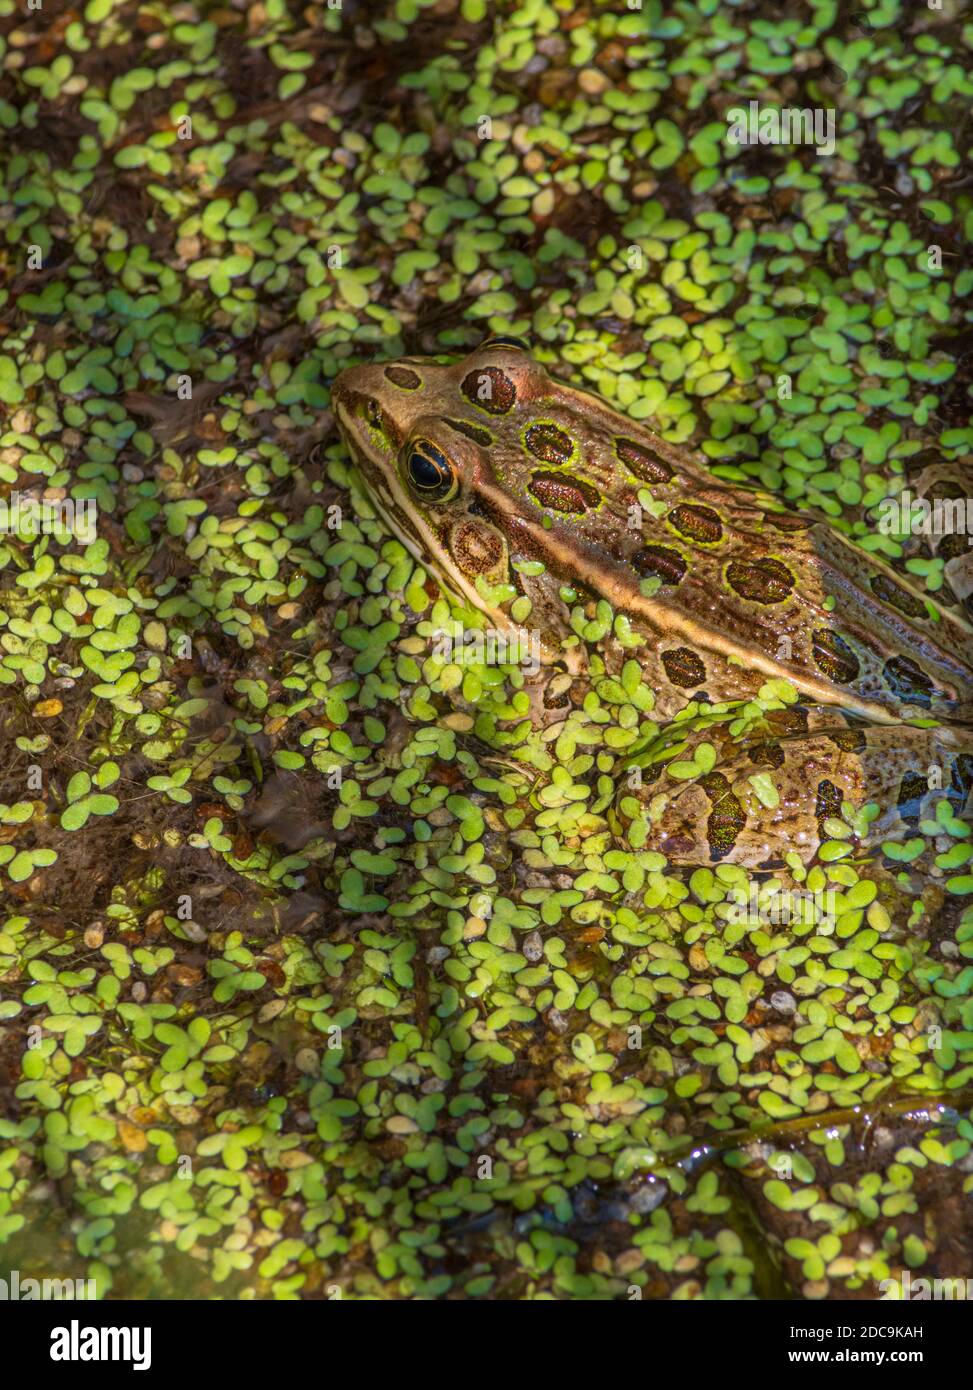 Plains Leopard Frog (Lithobates blairi) versteckt sich in Entenkraut von Feuchtgebieten Kattail Sumpfgebiet, Castle Rock Colorado USA. Foto aufgenommen im August. Stockfoto